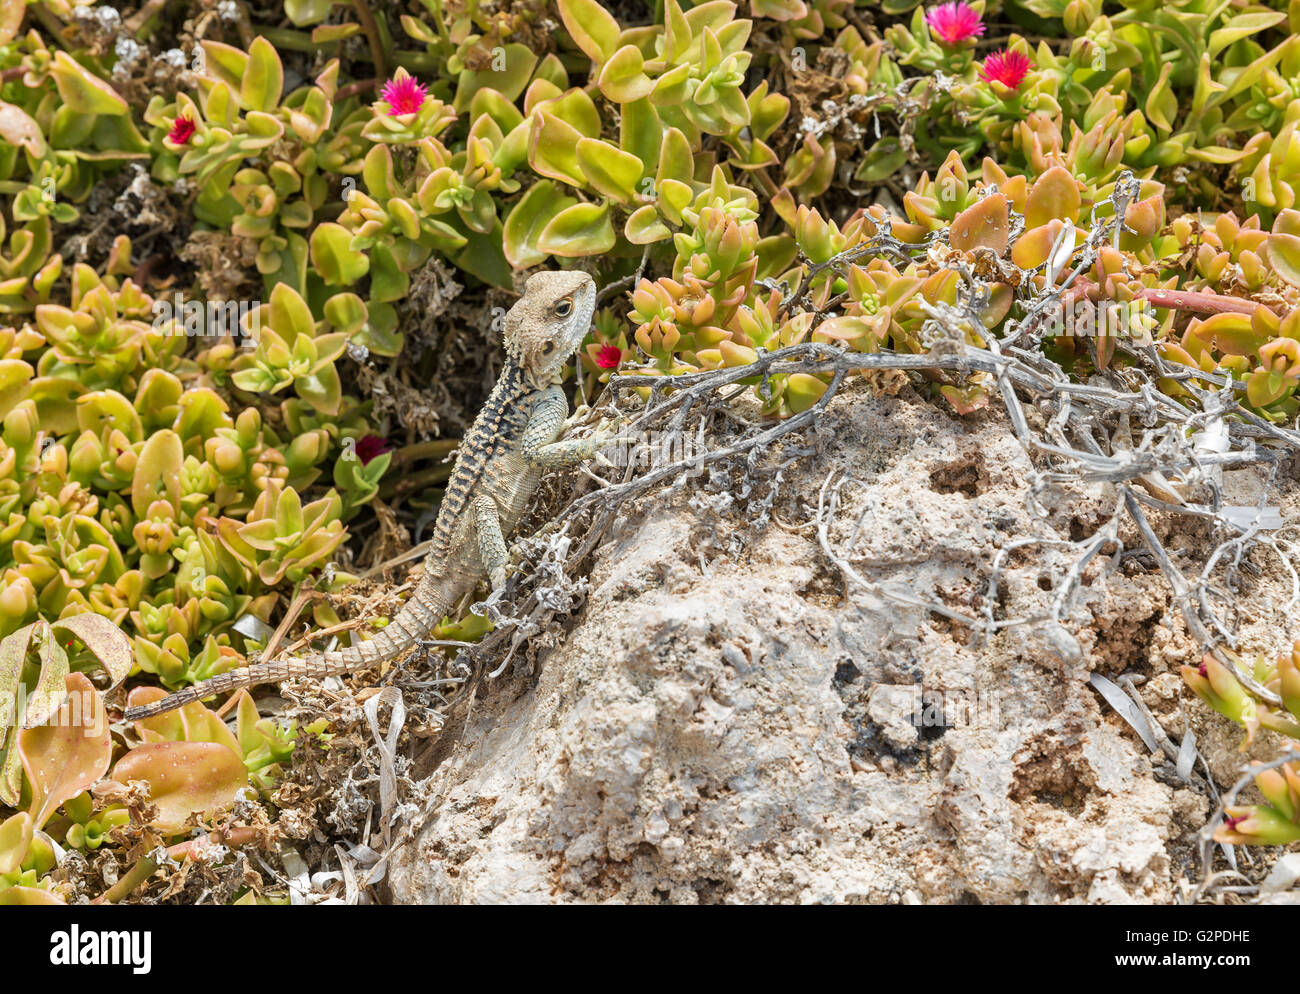 Laudakia stellio étoilé ( Agama lizard ) sur un rocher à l'île de Paphos à Chypre Banque D'Images